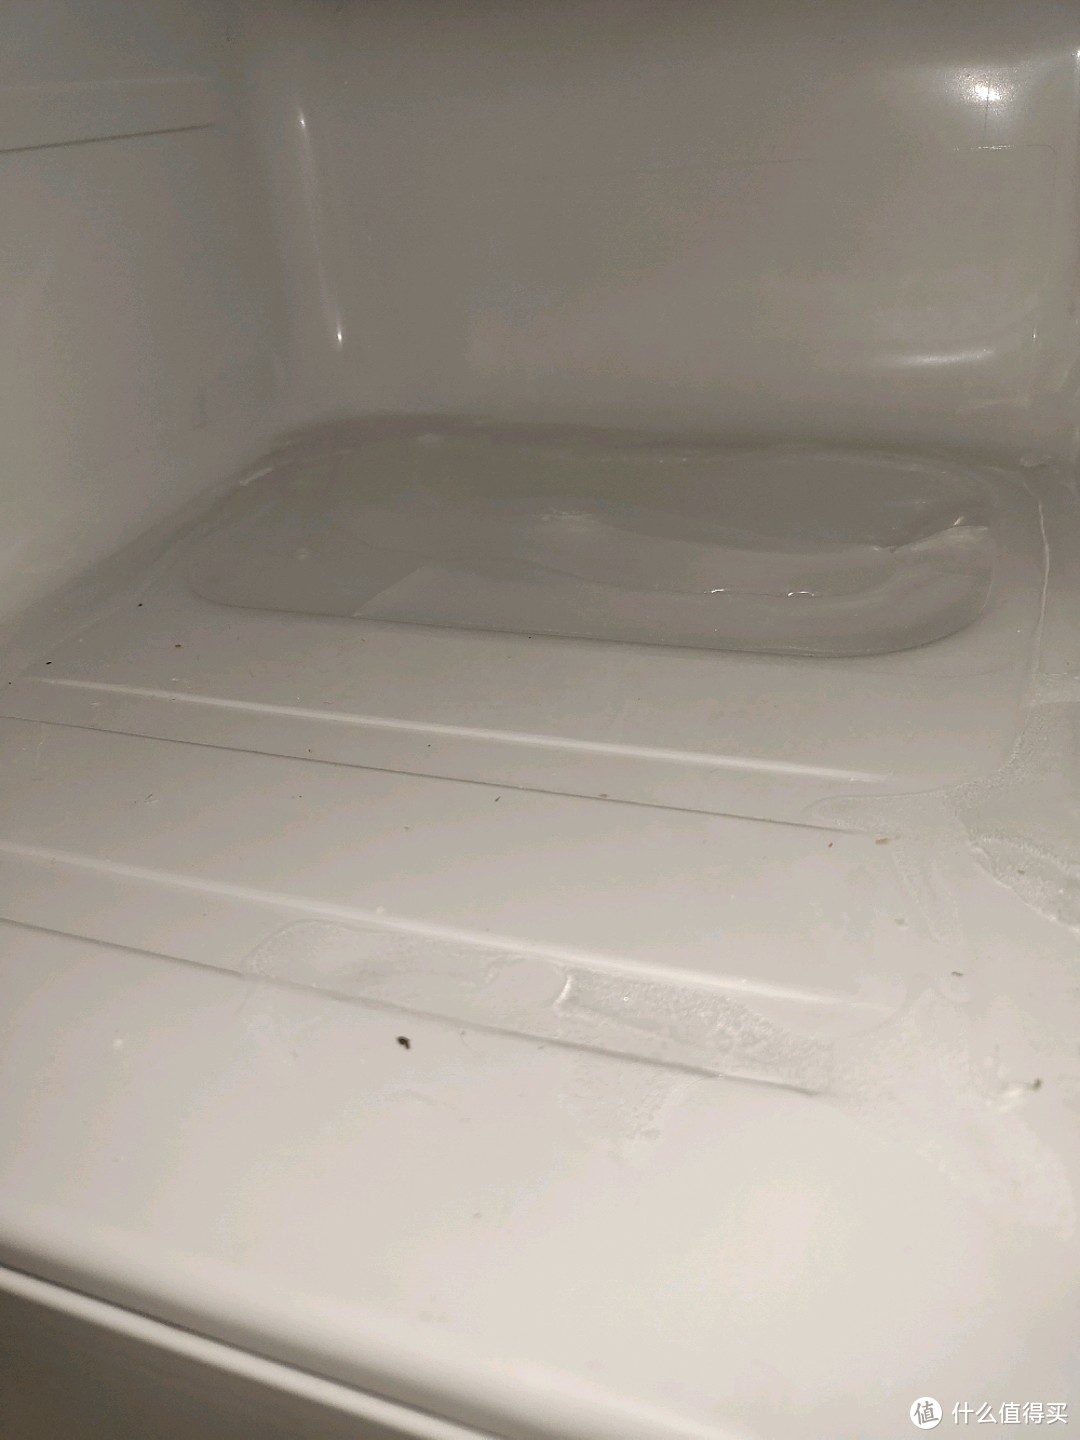 风冷冰箱 冷凝水排水口结冰疏通大作战